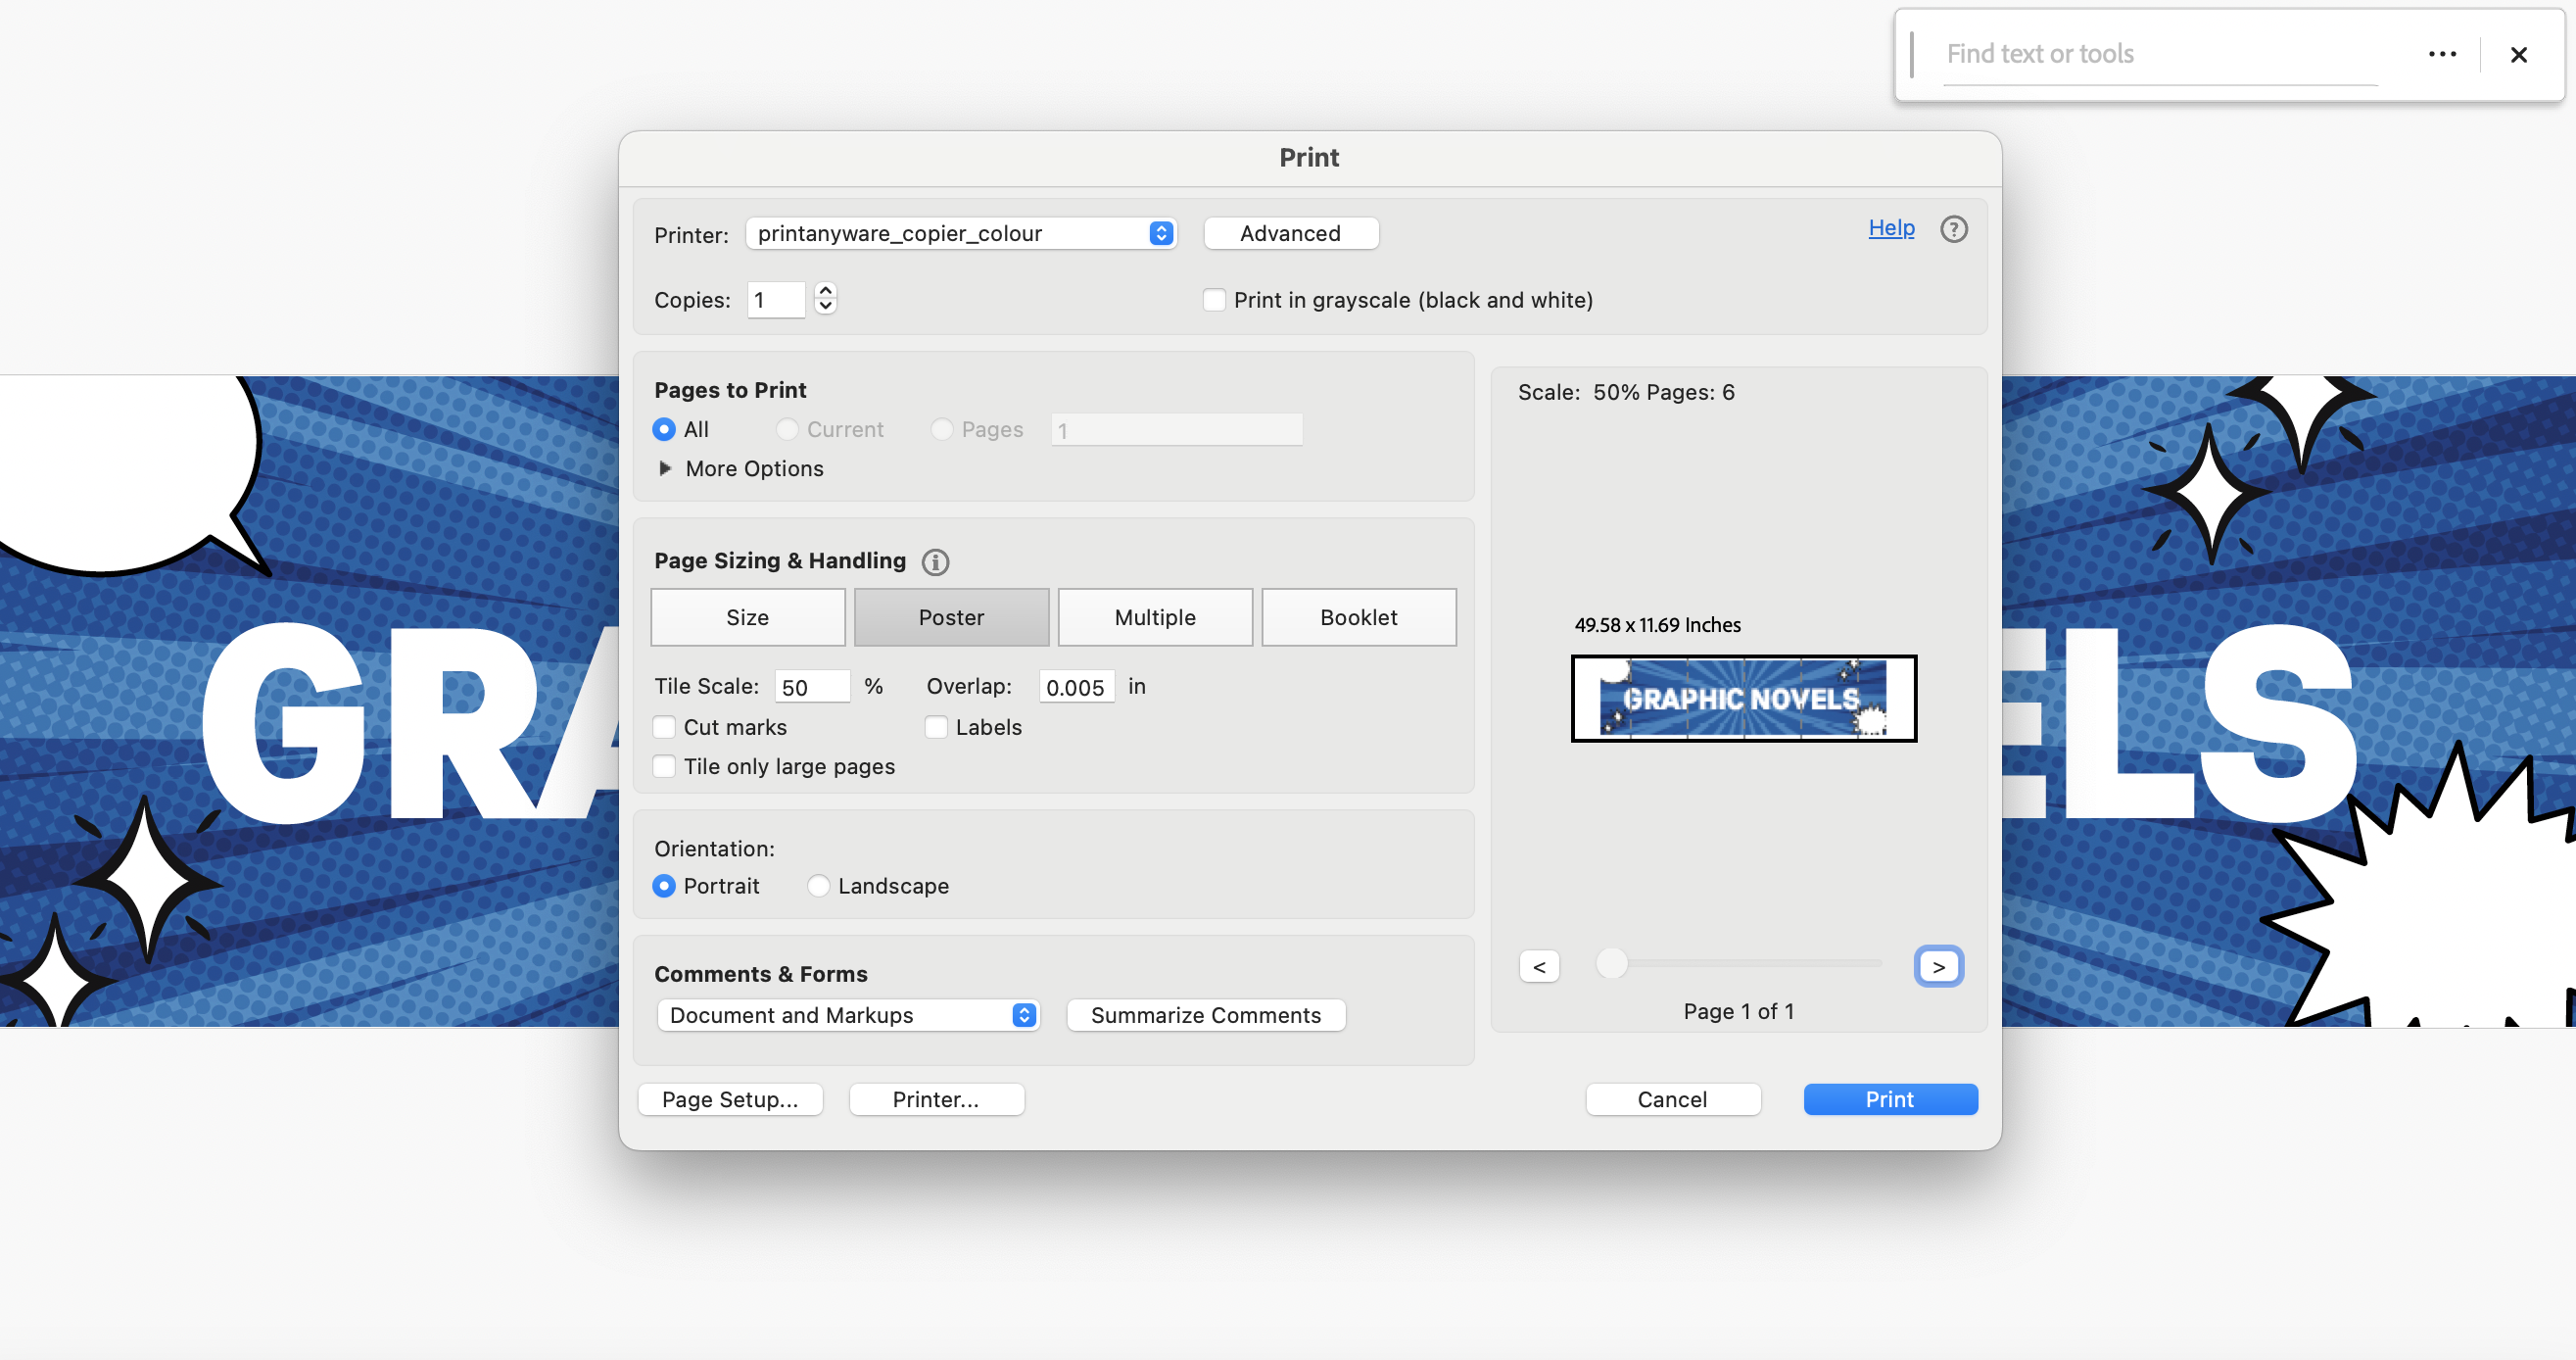 Adobe Acrobat Reader screenshot showing printer settings